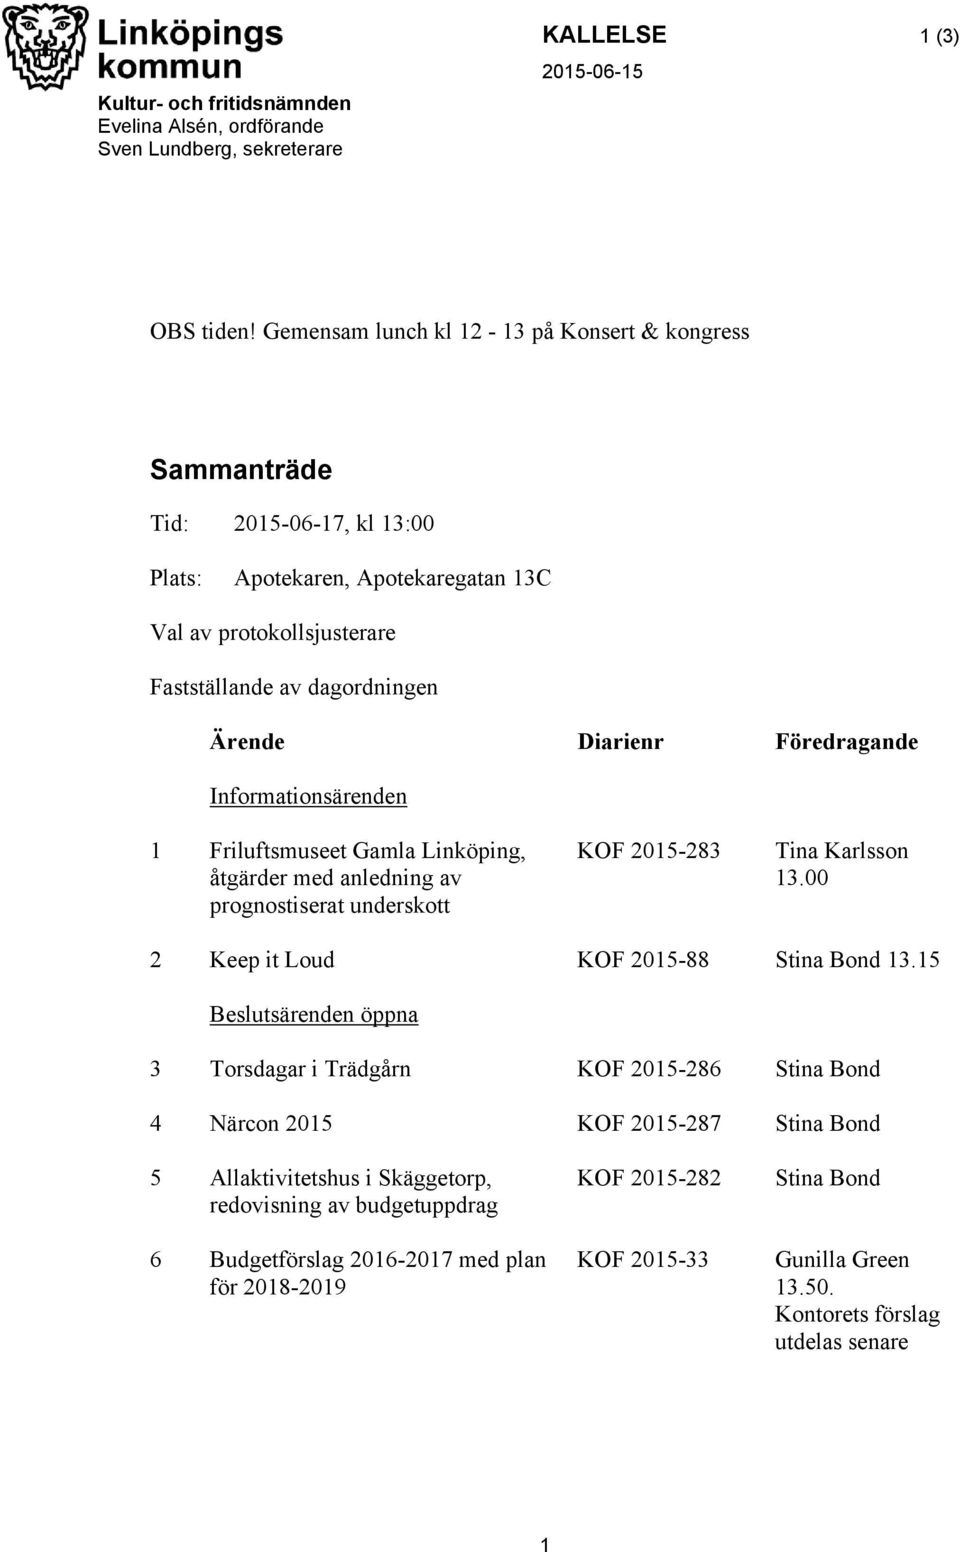 Föredragande Informationsärenden 1 Friluftsmuseet Gamla Linköping, åtgärder med anledning av prognostiserat underskott KOF 2015-283 Tina Karlsson 13.00 2 Keep it Loud KOF 2015-88 Stina Bond 13.